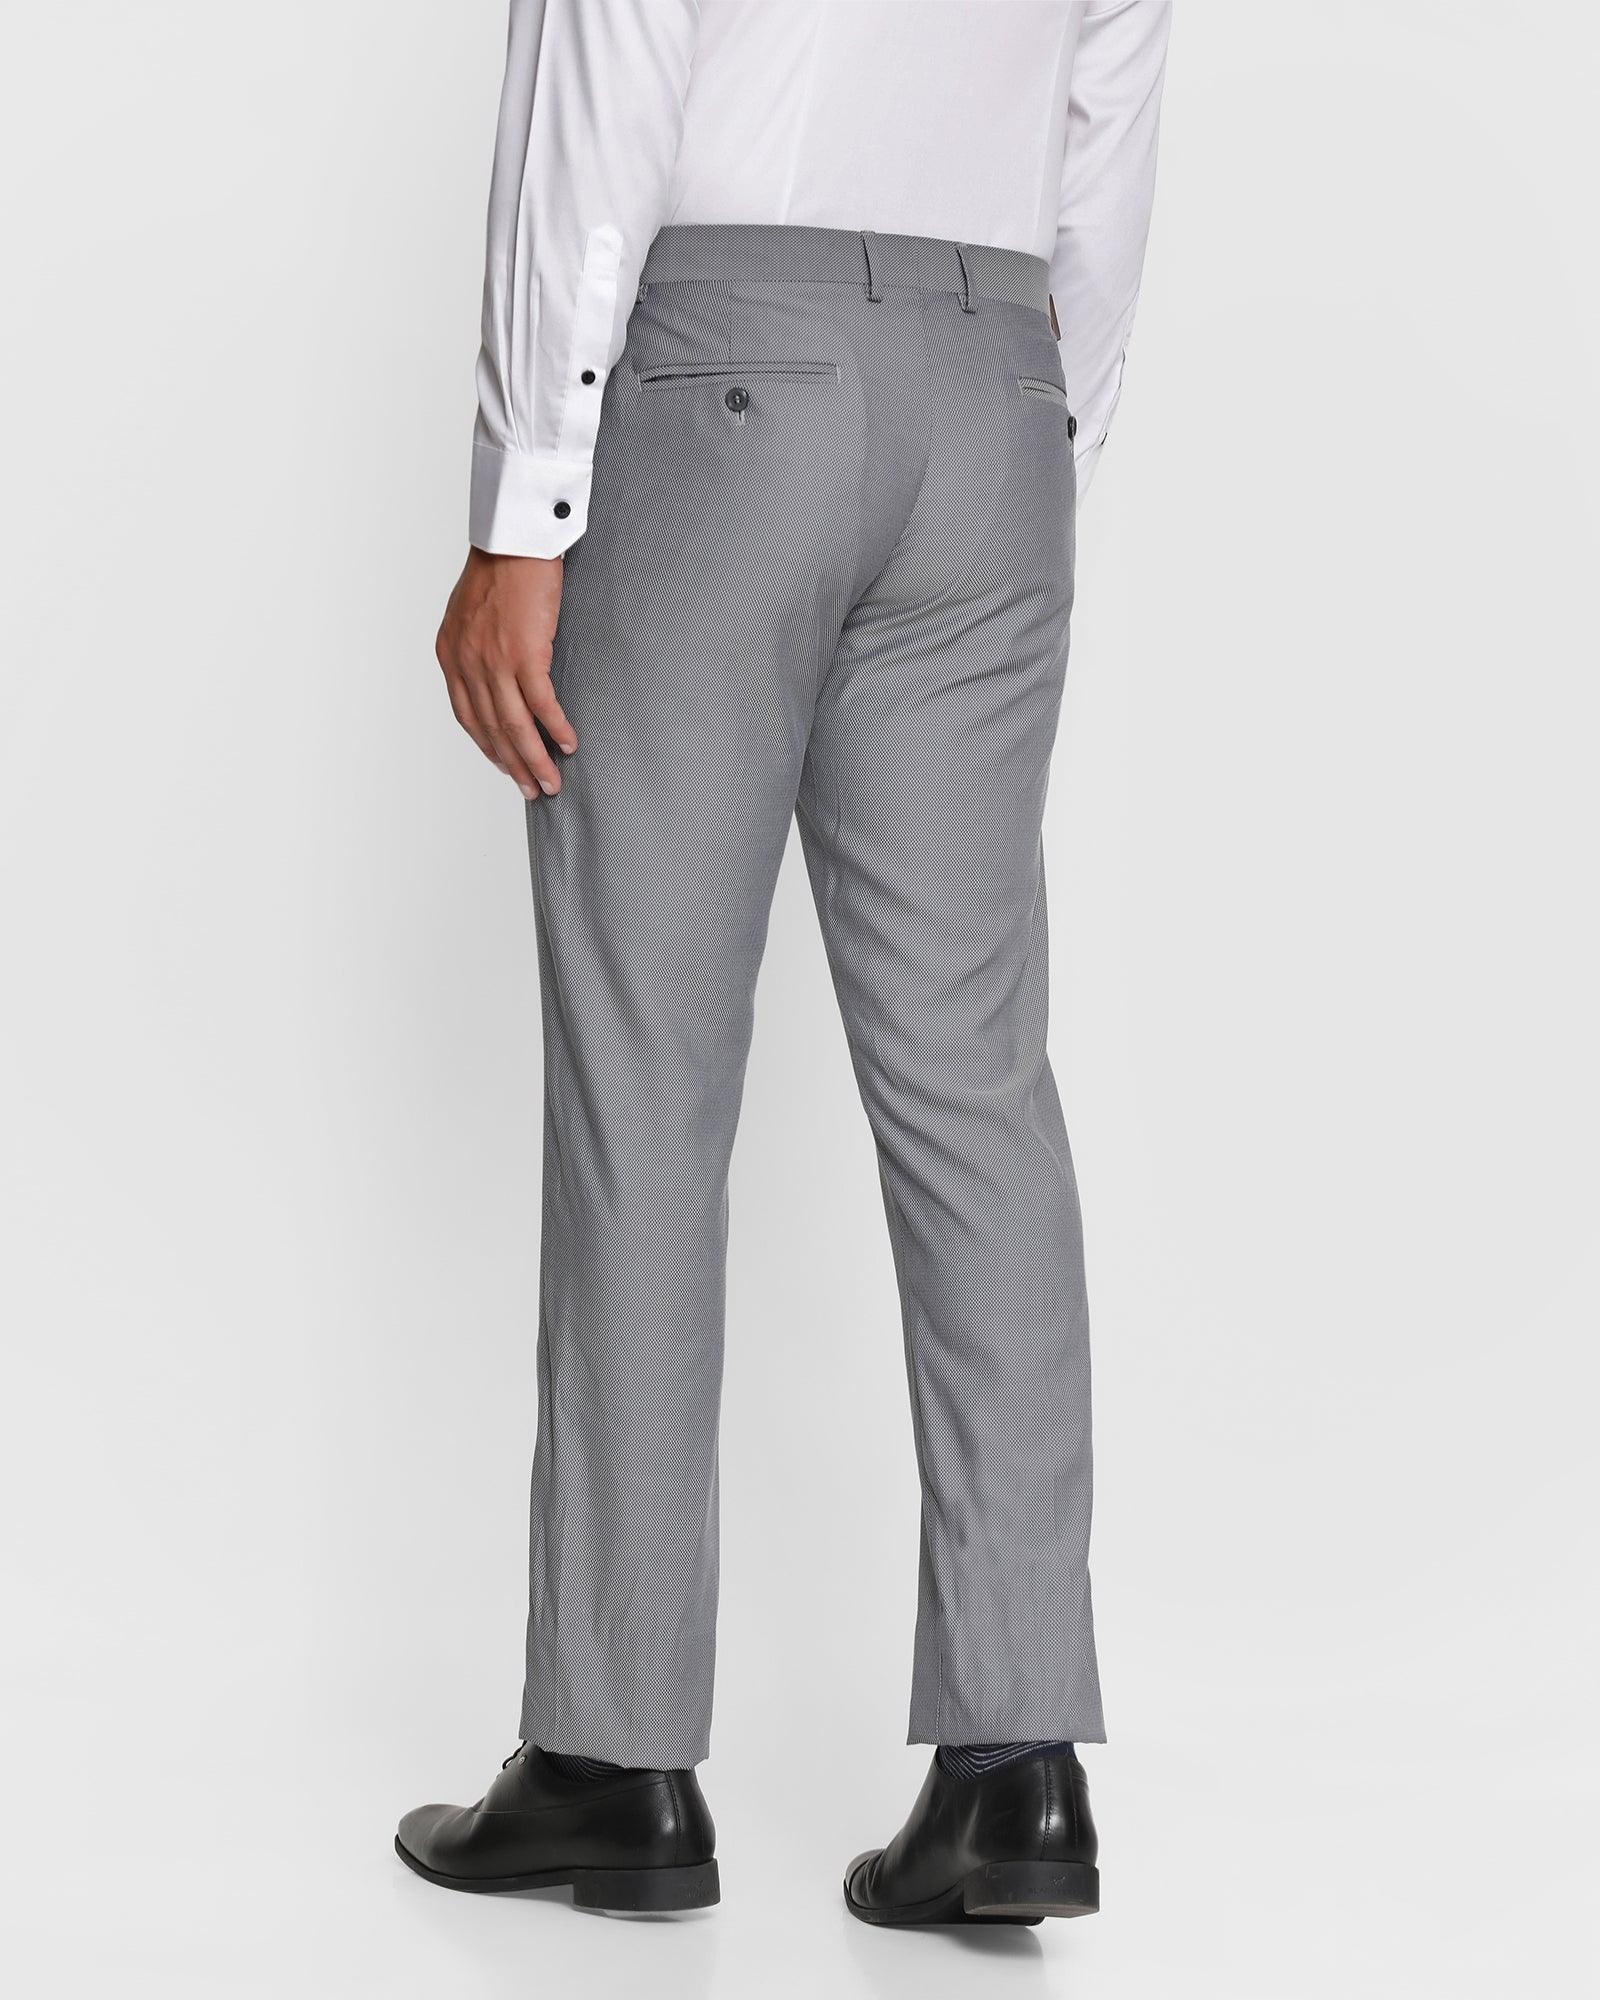 Mens Lycra Pants Combo Firoji and Light Grey Color